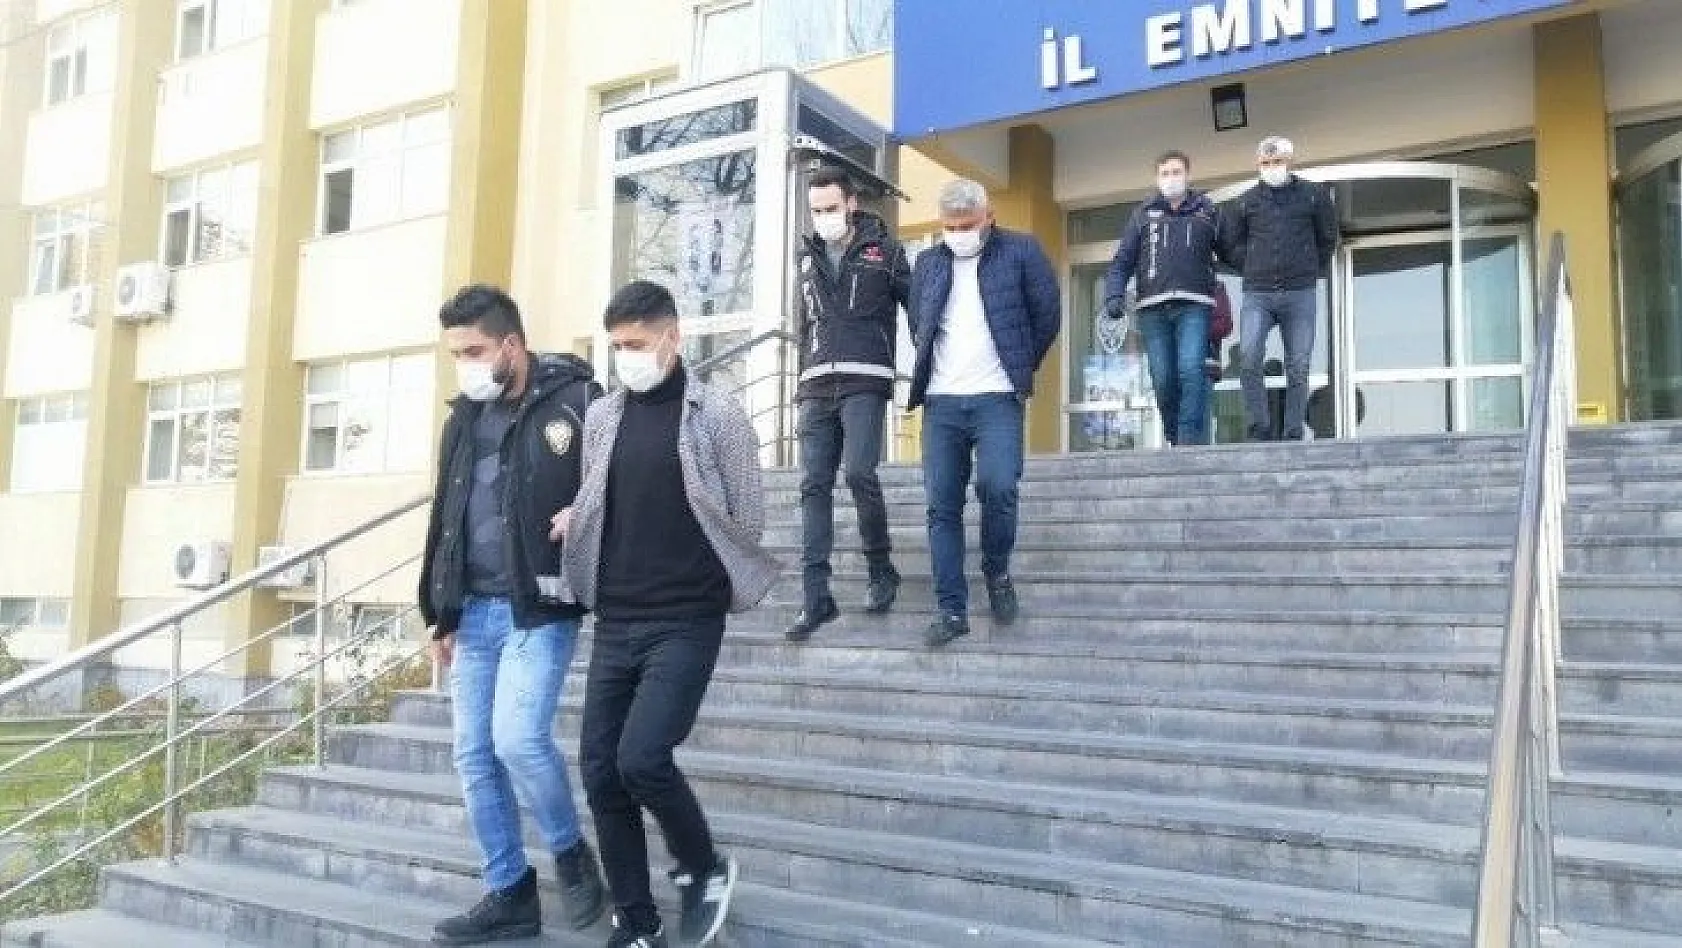 Kayseri'de uyuşturucu operasyonu: 4 gözaltı